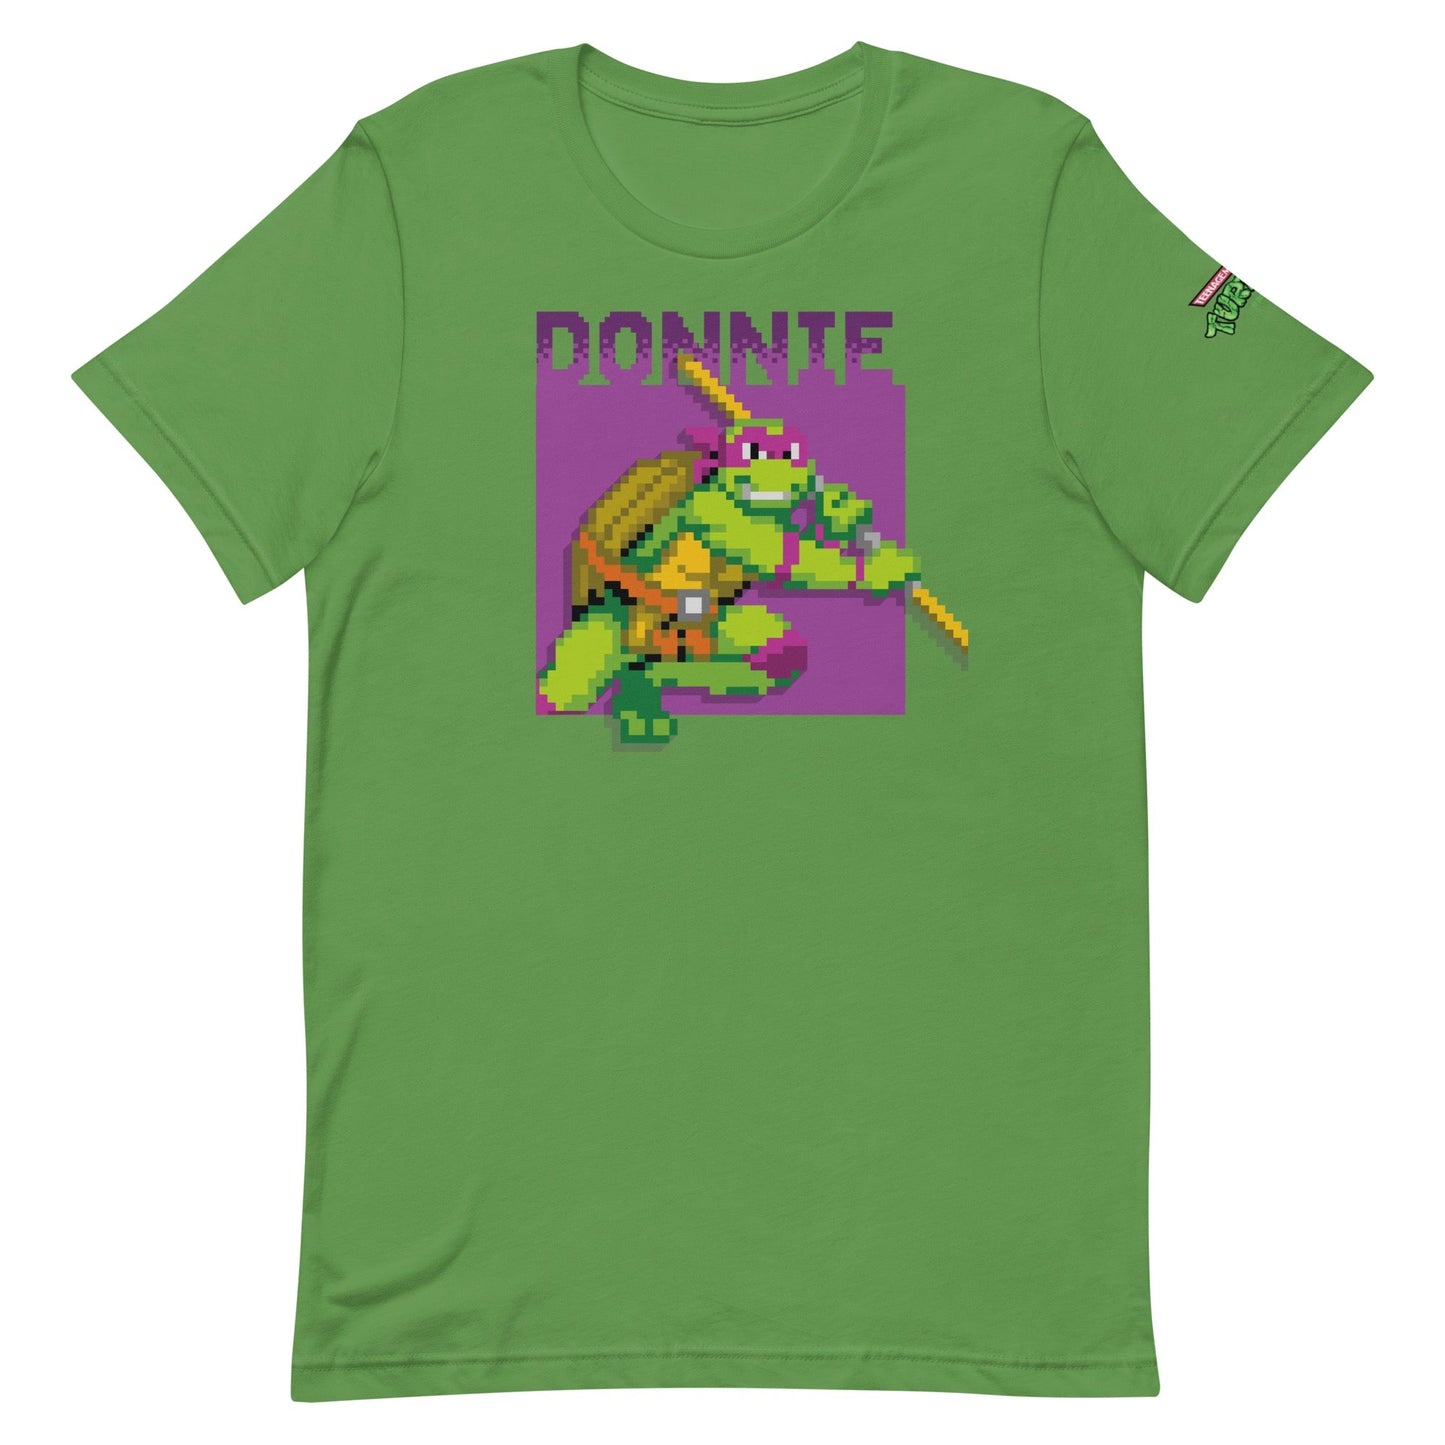 Teenage Mutant Ninja Turtles Donnie Arcade Ninja Adult Short Sleeve T - Shirt - Paramount Shop